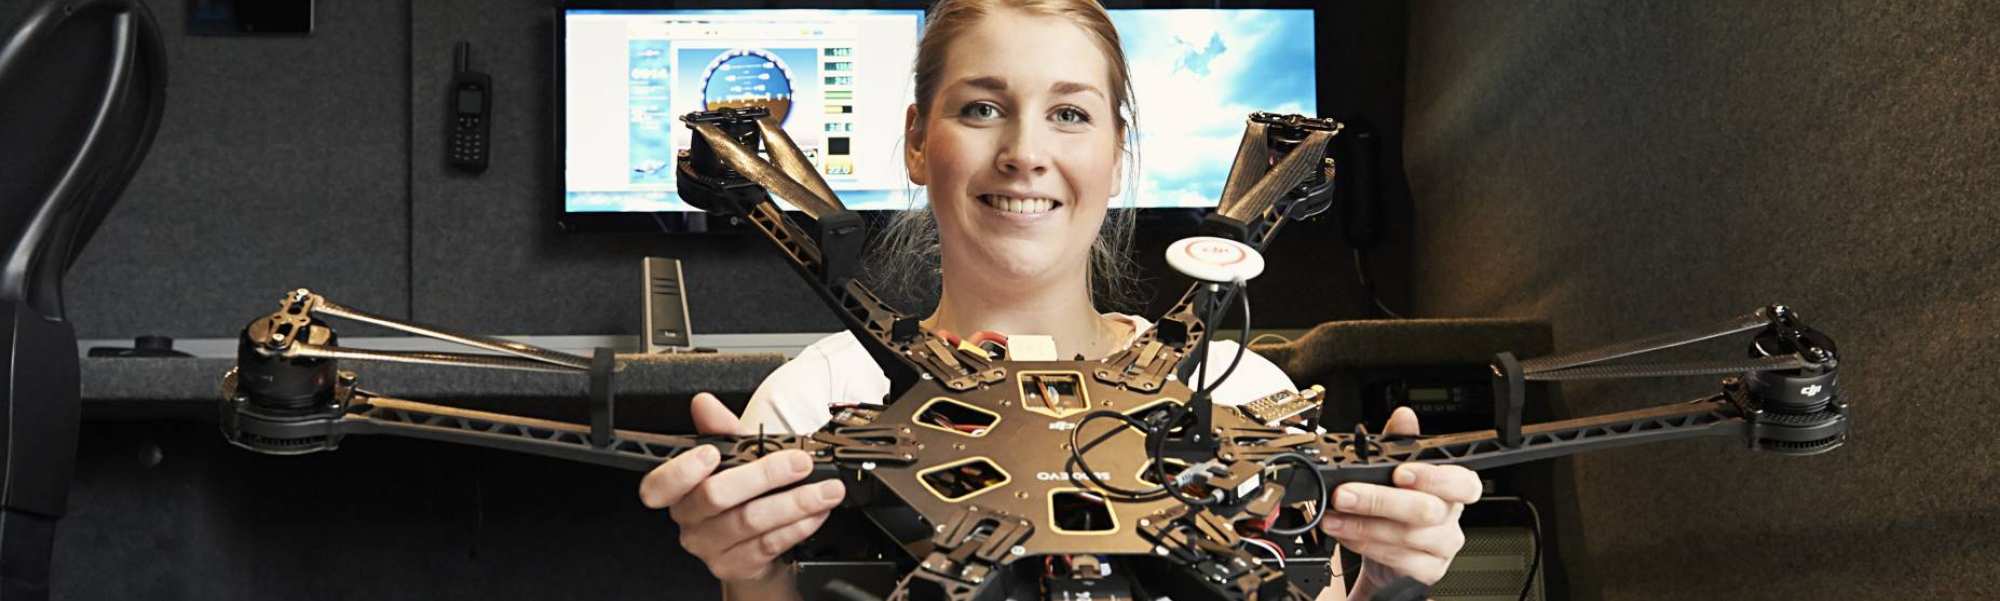 Elektrotechniek campagne TekNick TekNikkie beroepen van de toekomst drone piloot 2020